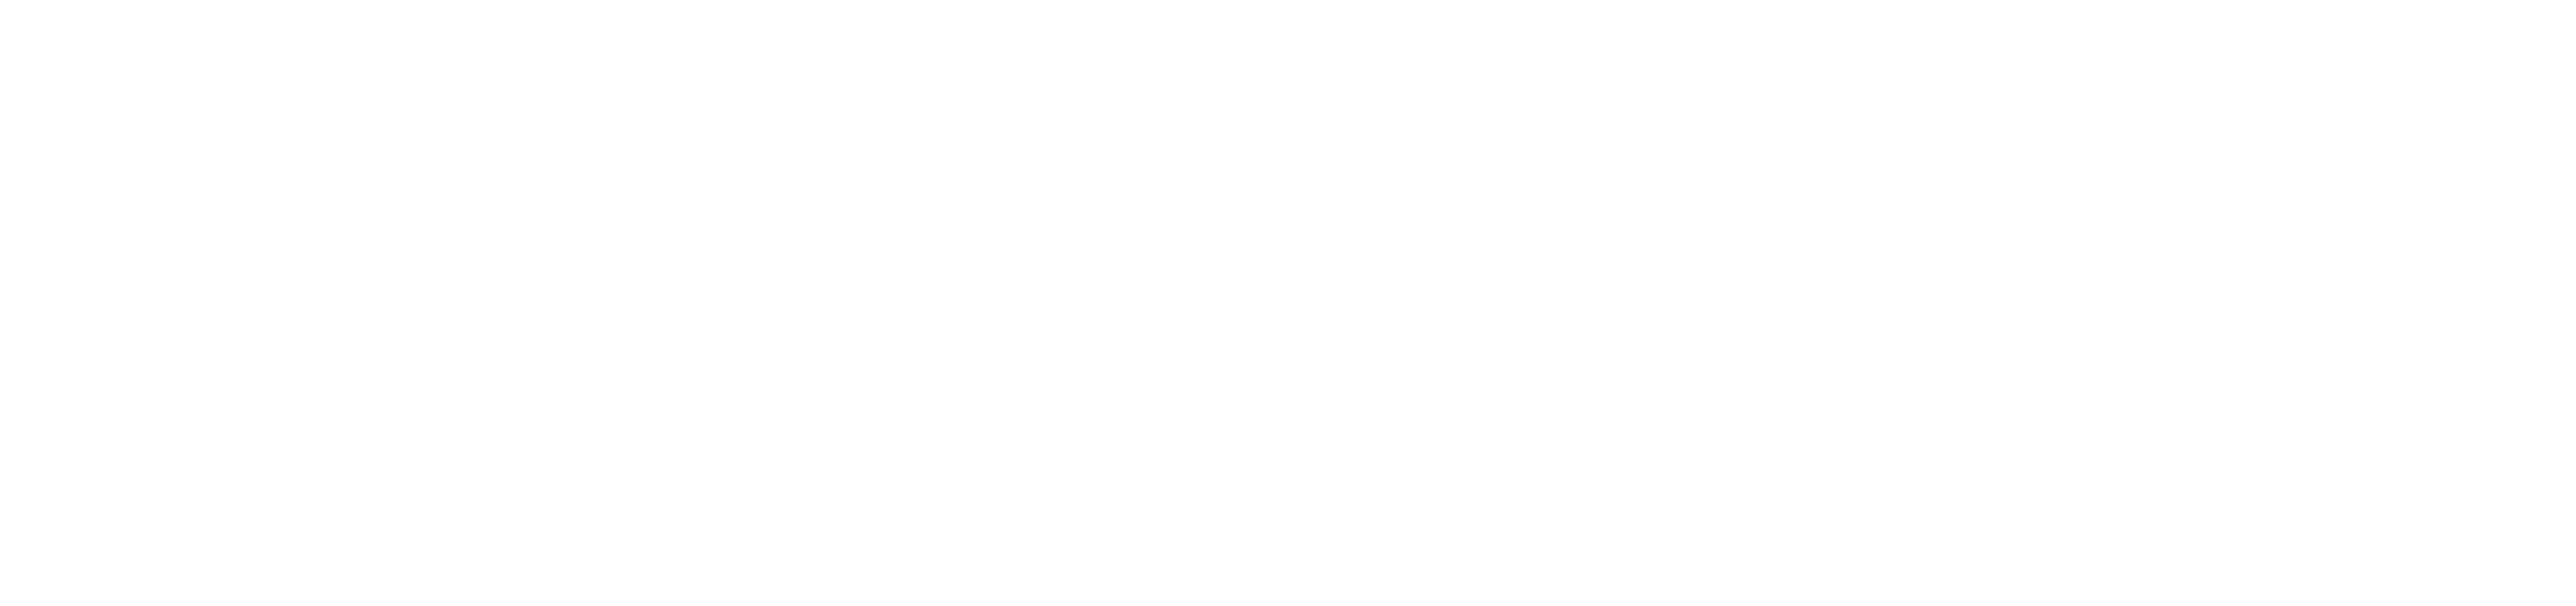 [logo]-Spyrosoft-white